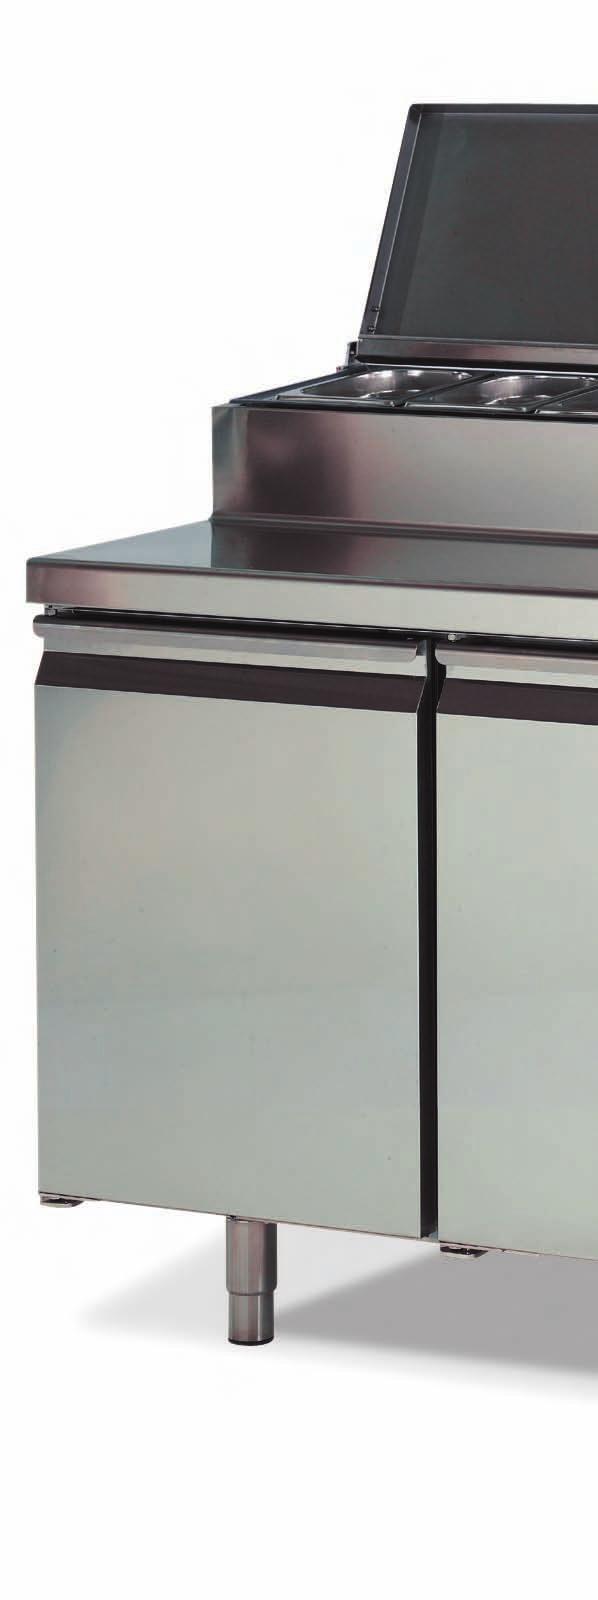 Serie y700 Gastronorm / Bajo mostrador refrigerado para ensalada IO-BMGN 960 EN Exterior en acero inox AISI 0. Interior en acero inox AISI 0.